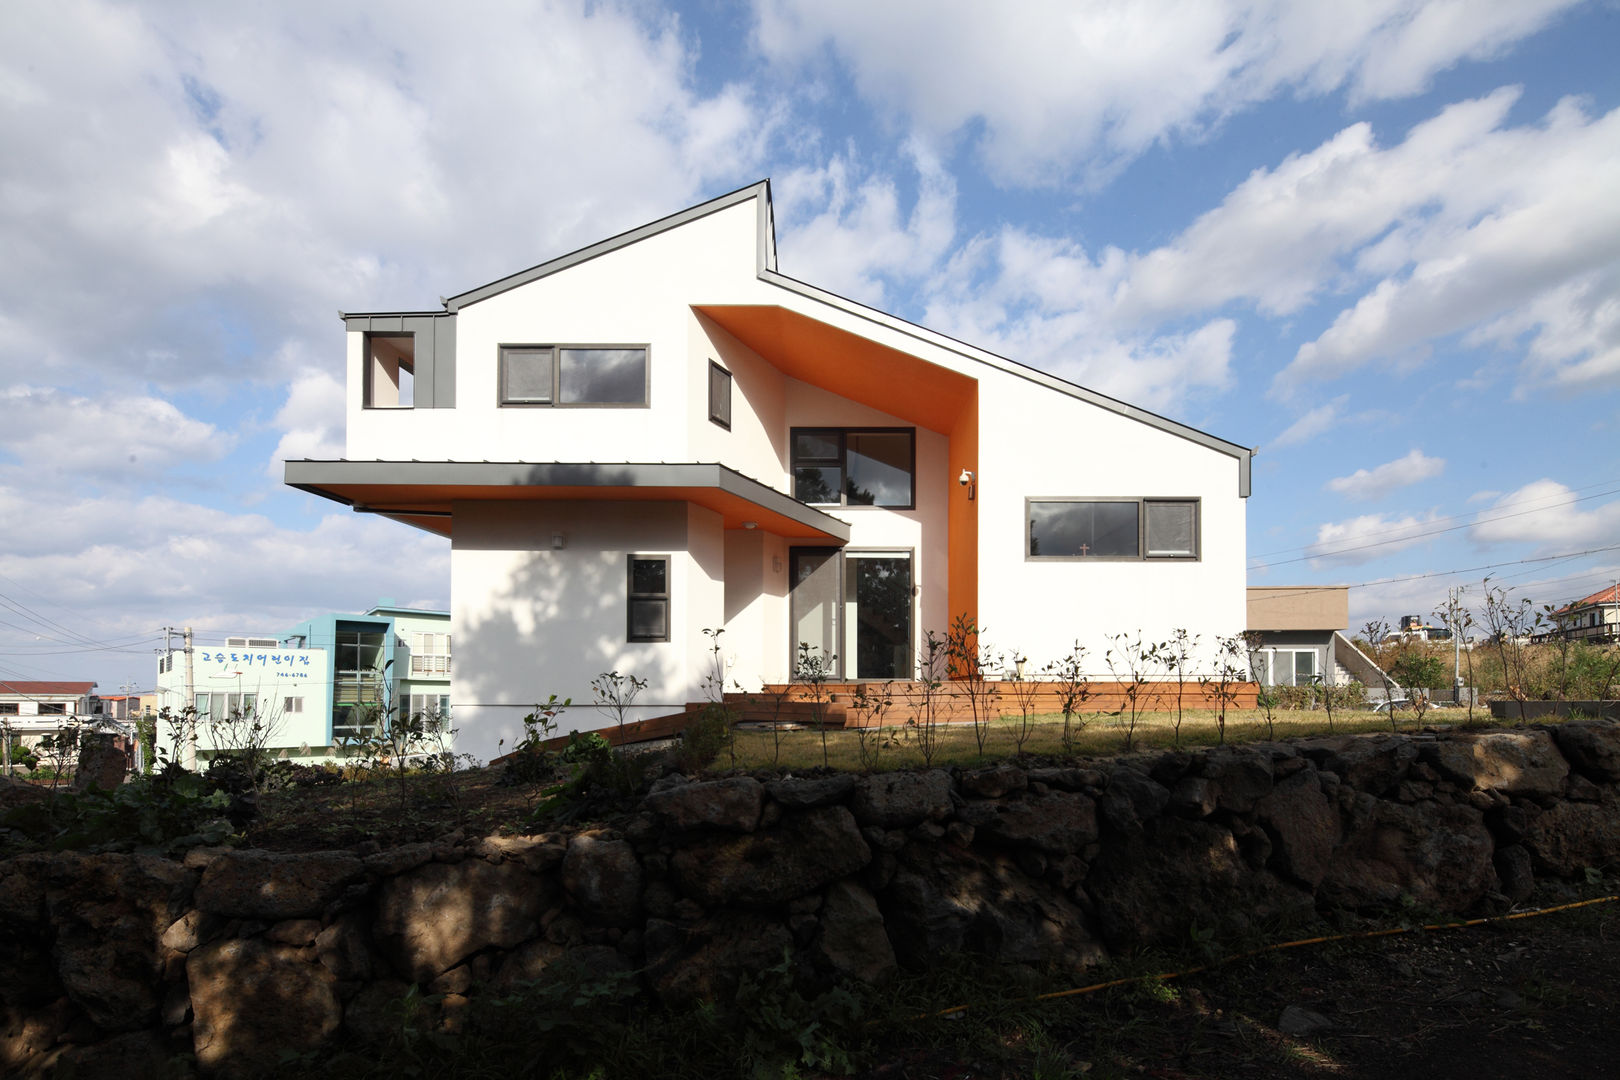 풍광좋은 제주 개러지 하우스, 주택설계전문 디자인그룹 홈스타일토토 주택설계전문 디자인그룹 홈스타일토토 Casas modernas